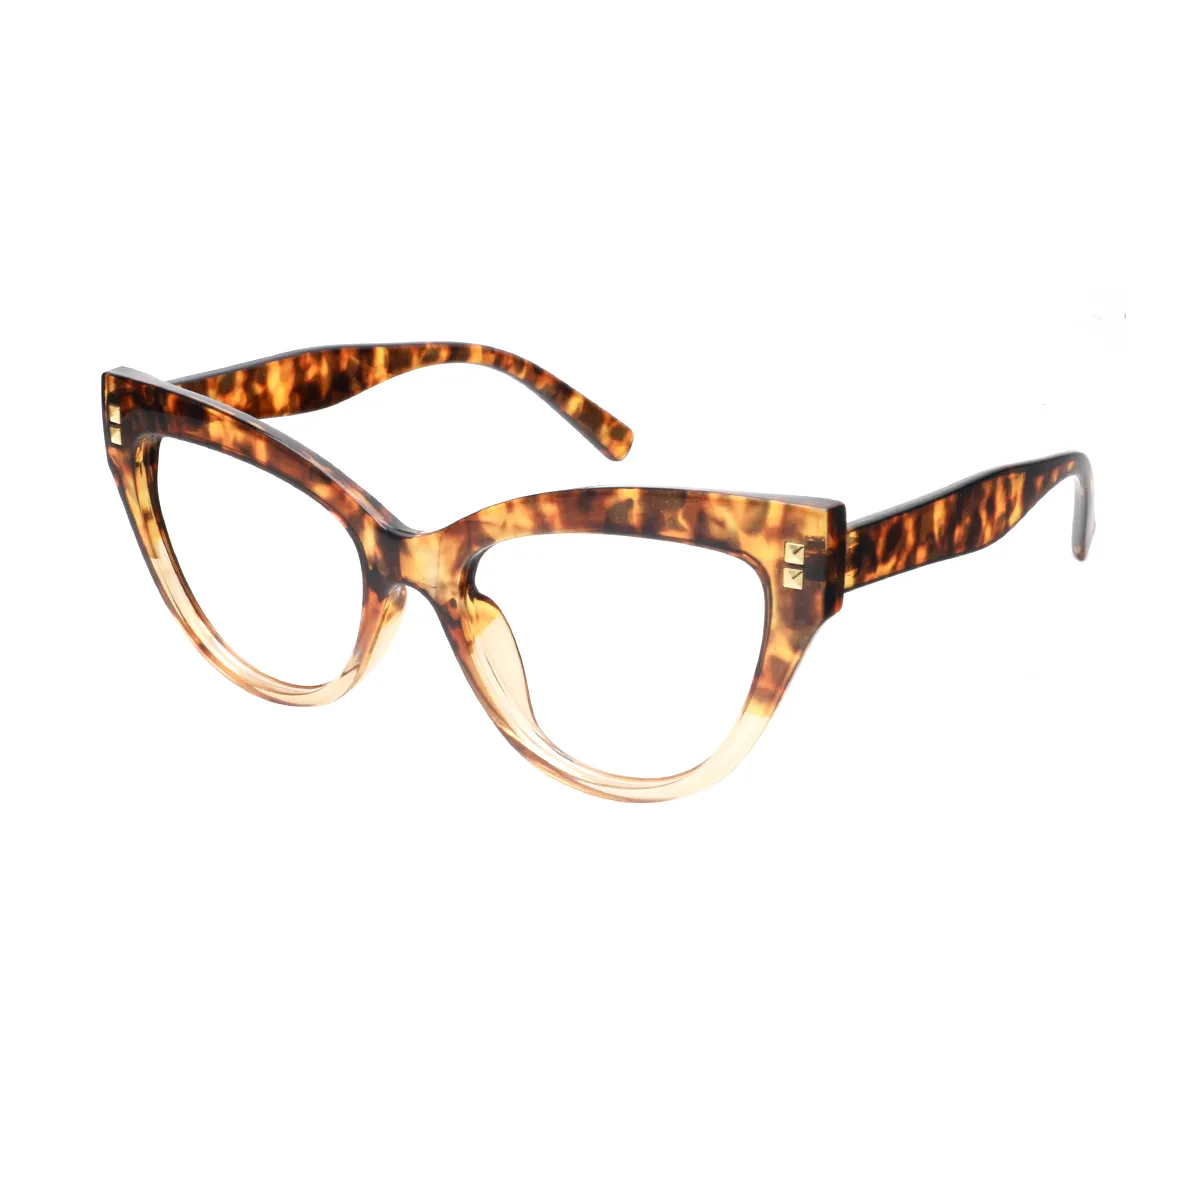 Cathy - Cat-eye Tortoiseshell Glasses for Women